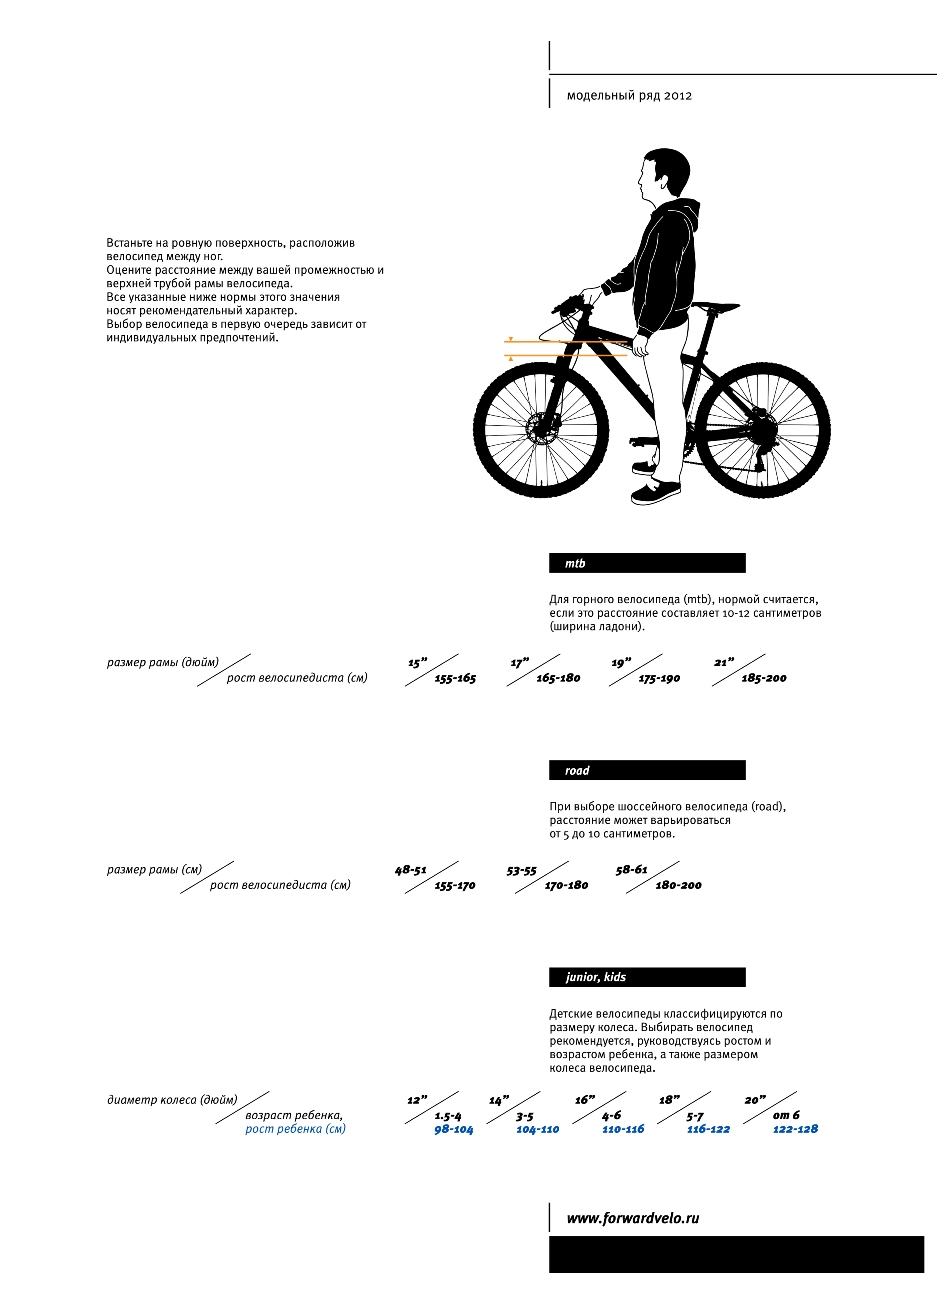 Рост м велосипед. Размер рамы велосипеда по росту женщина. Таблица выбора велосипеда по росту и весу. Какой размер рамы выбрать для велосипеда рост 182. Схема подбора велосипеда по росту таблица.